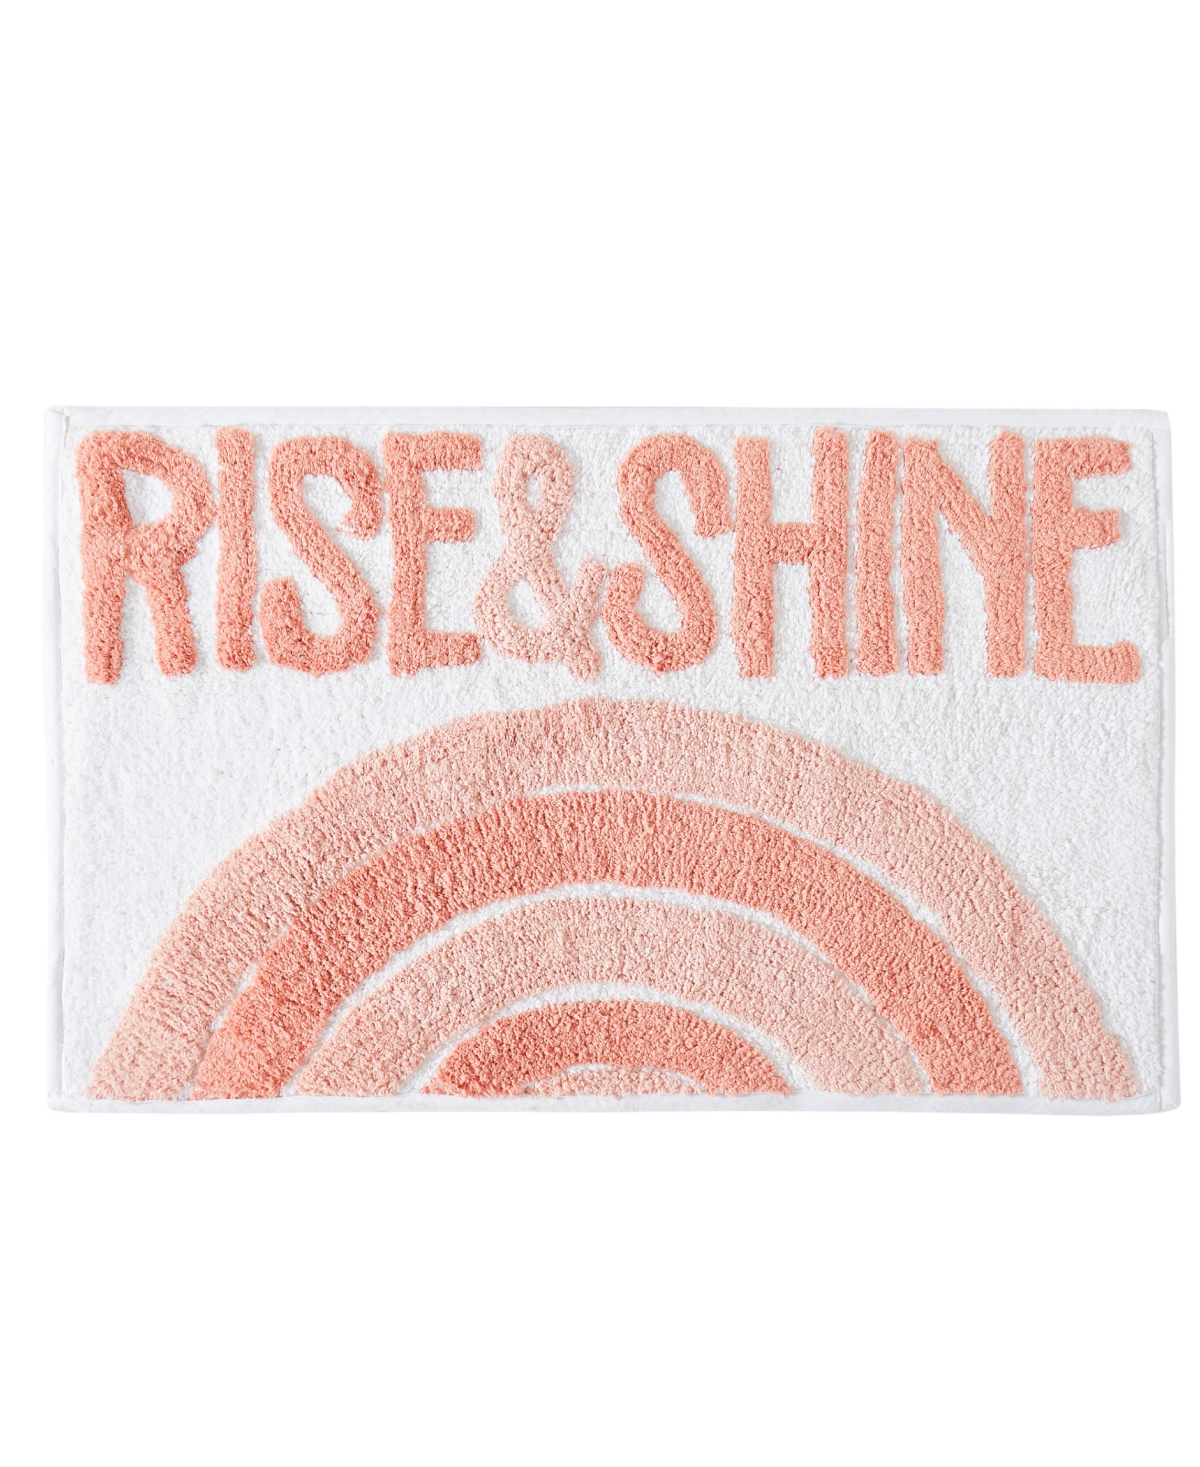 Rise & Shine Cotton Bath Rug, 20" x 32" - Clay